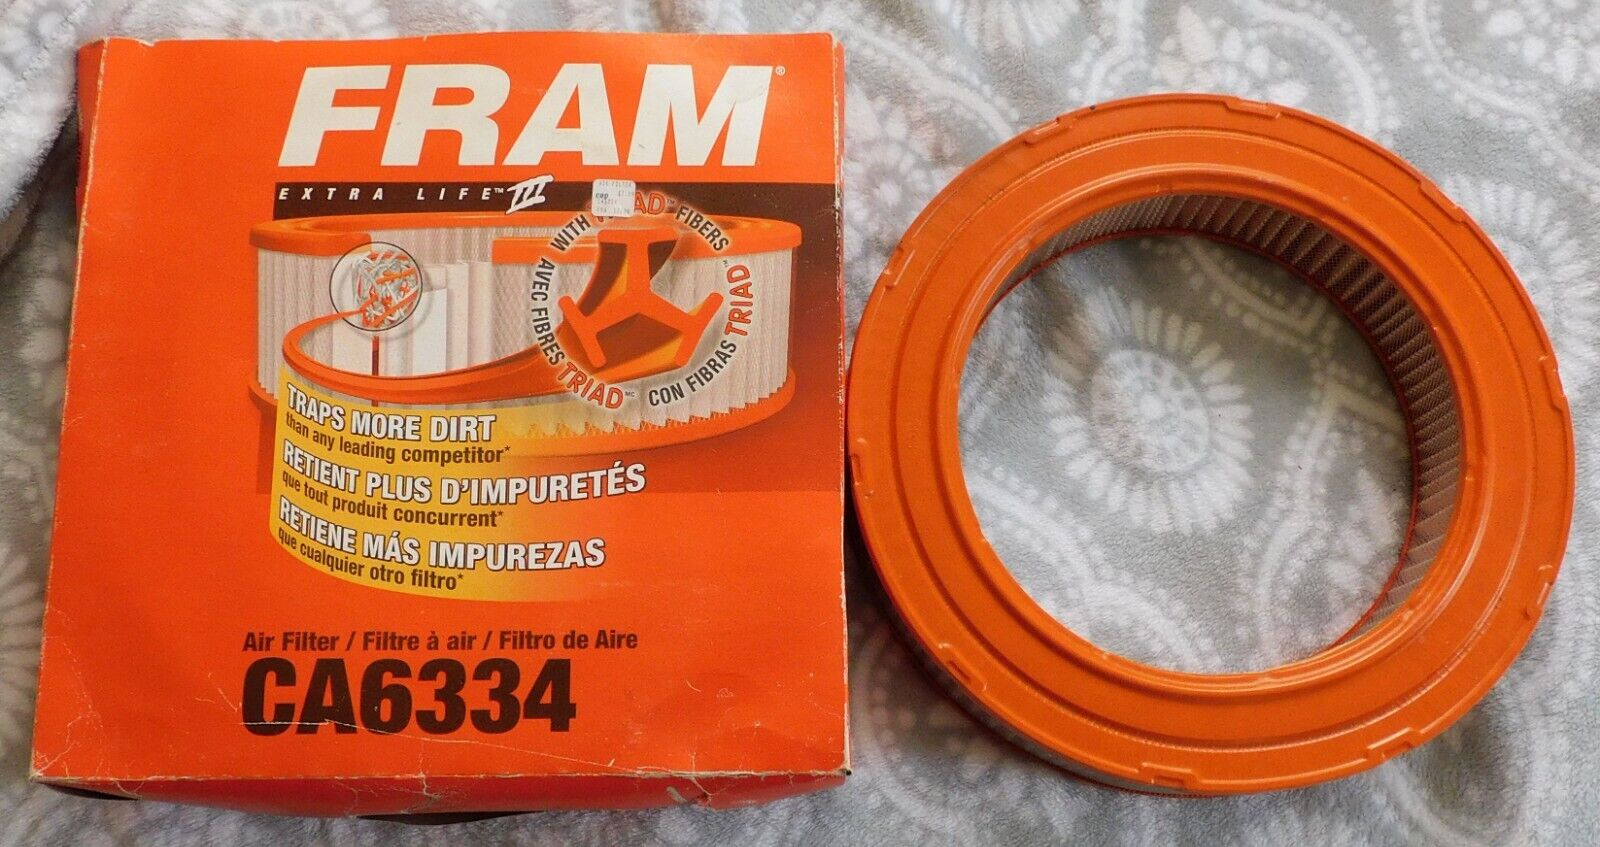 Fram Extra Life III Air Filter CA6334